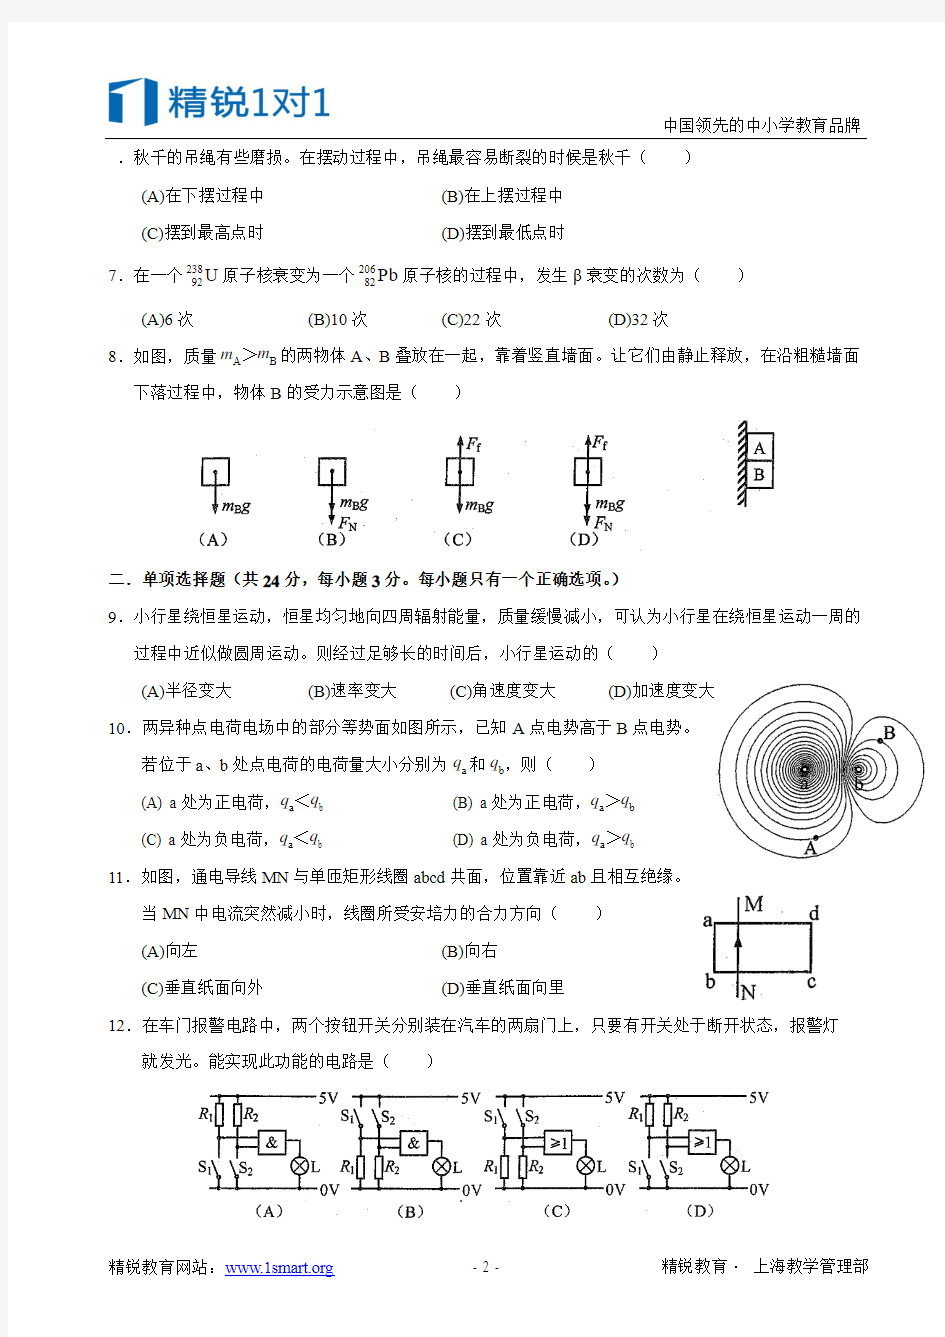 2013年上海高考物理试卷电了稿(校对版)带标准答案